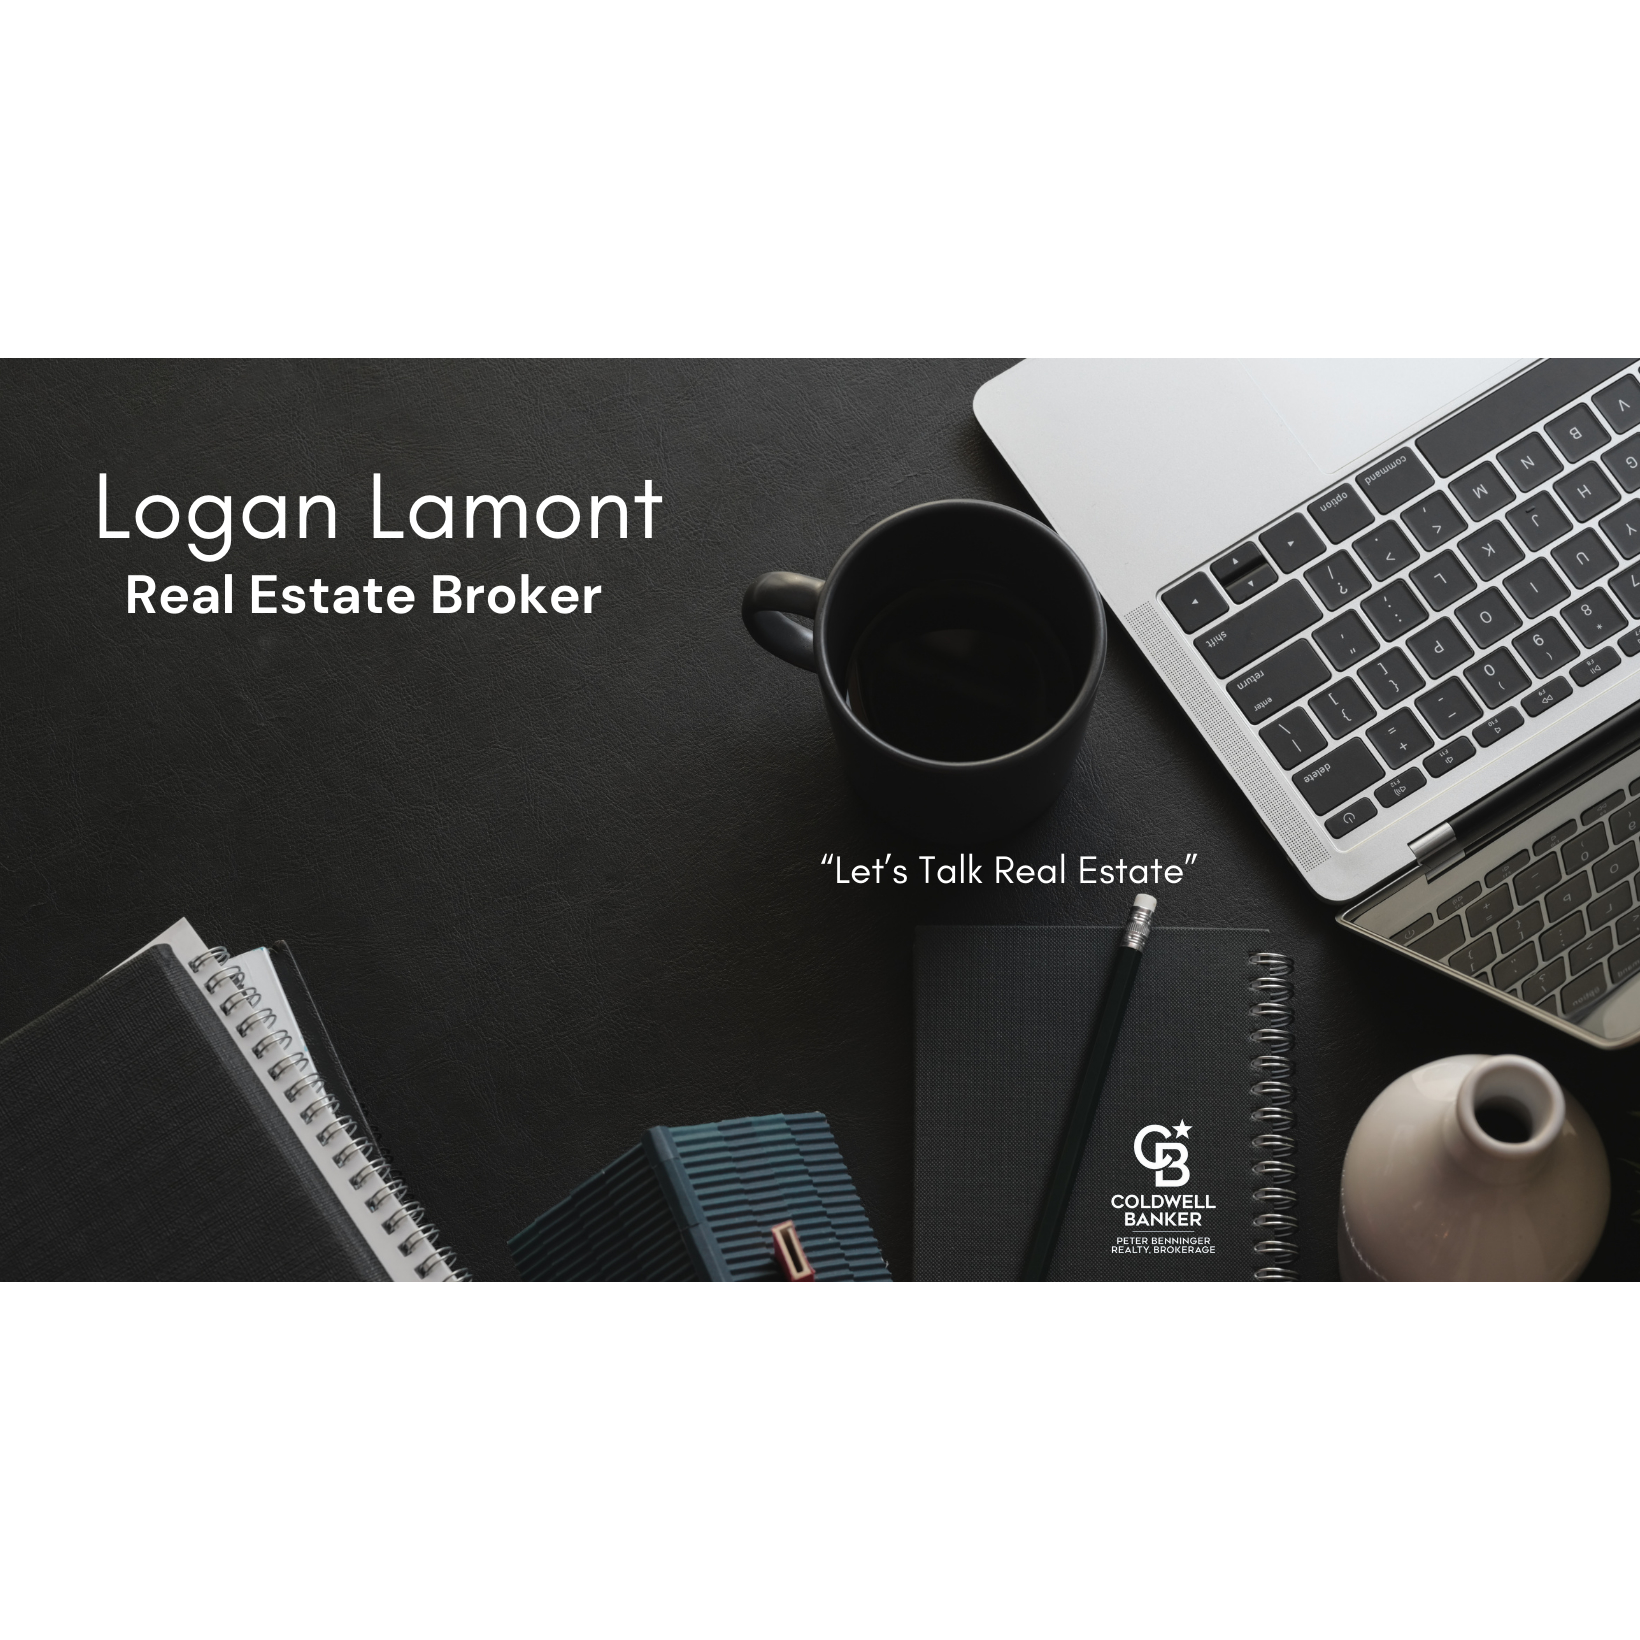 Logan Lamont Realtor - Courtiers immobiliers et agences immobilières